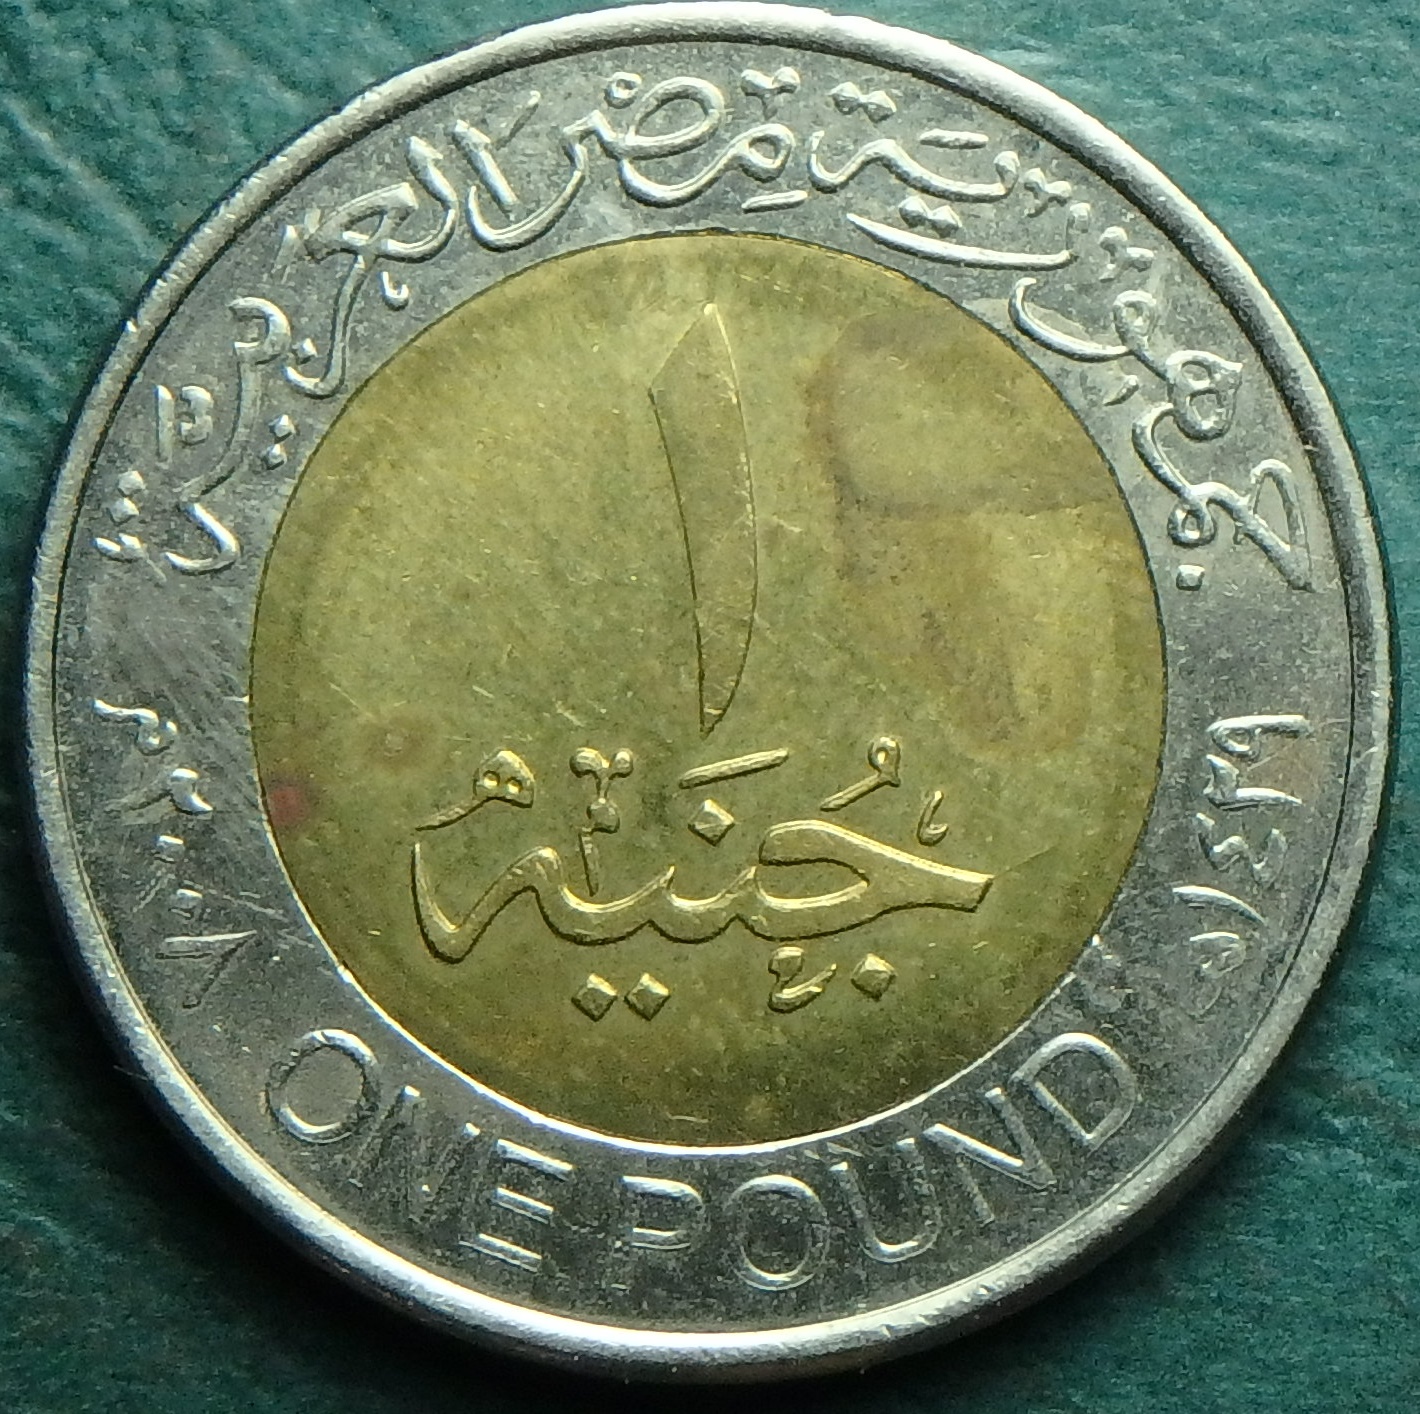 2008 EG 1 pound rev.JPG